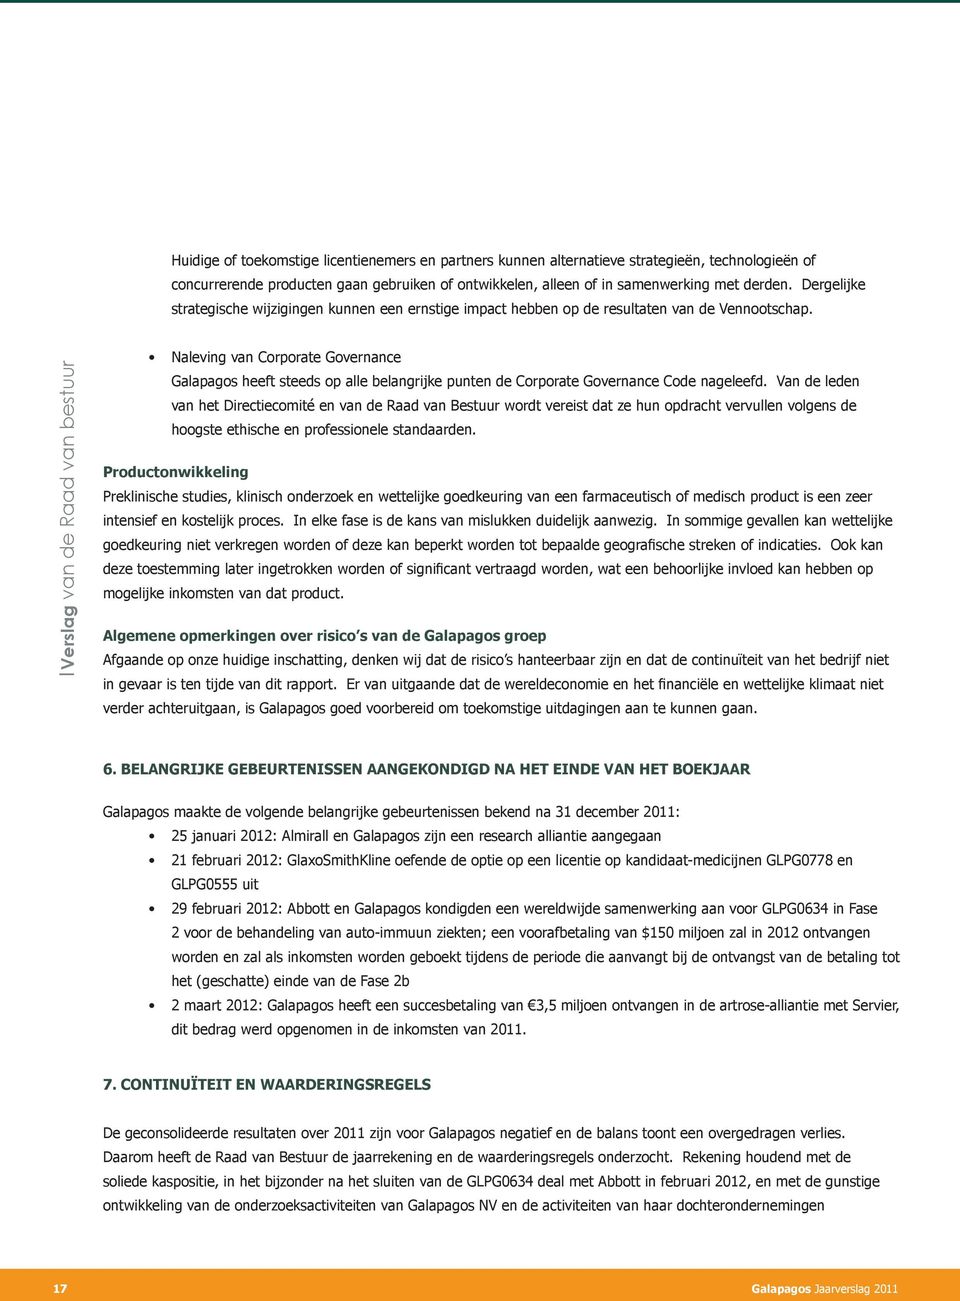 Verslag van de Raad van bestuur Naleving van Corporate Governance Galapagos heeft steeds op alle belangrijke punten de Corporate Governance Code nageleefd.